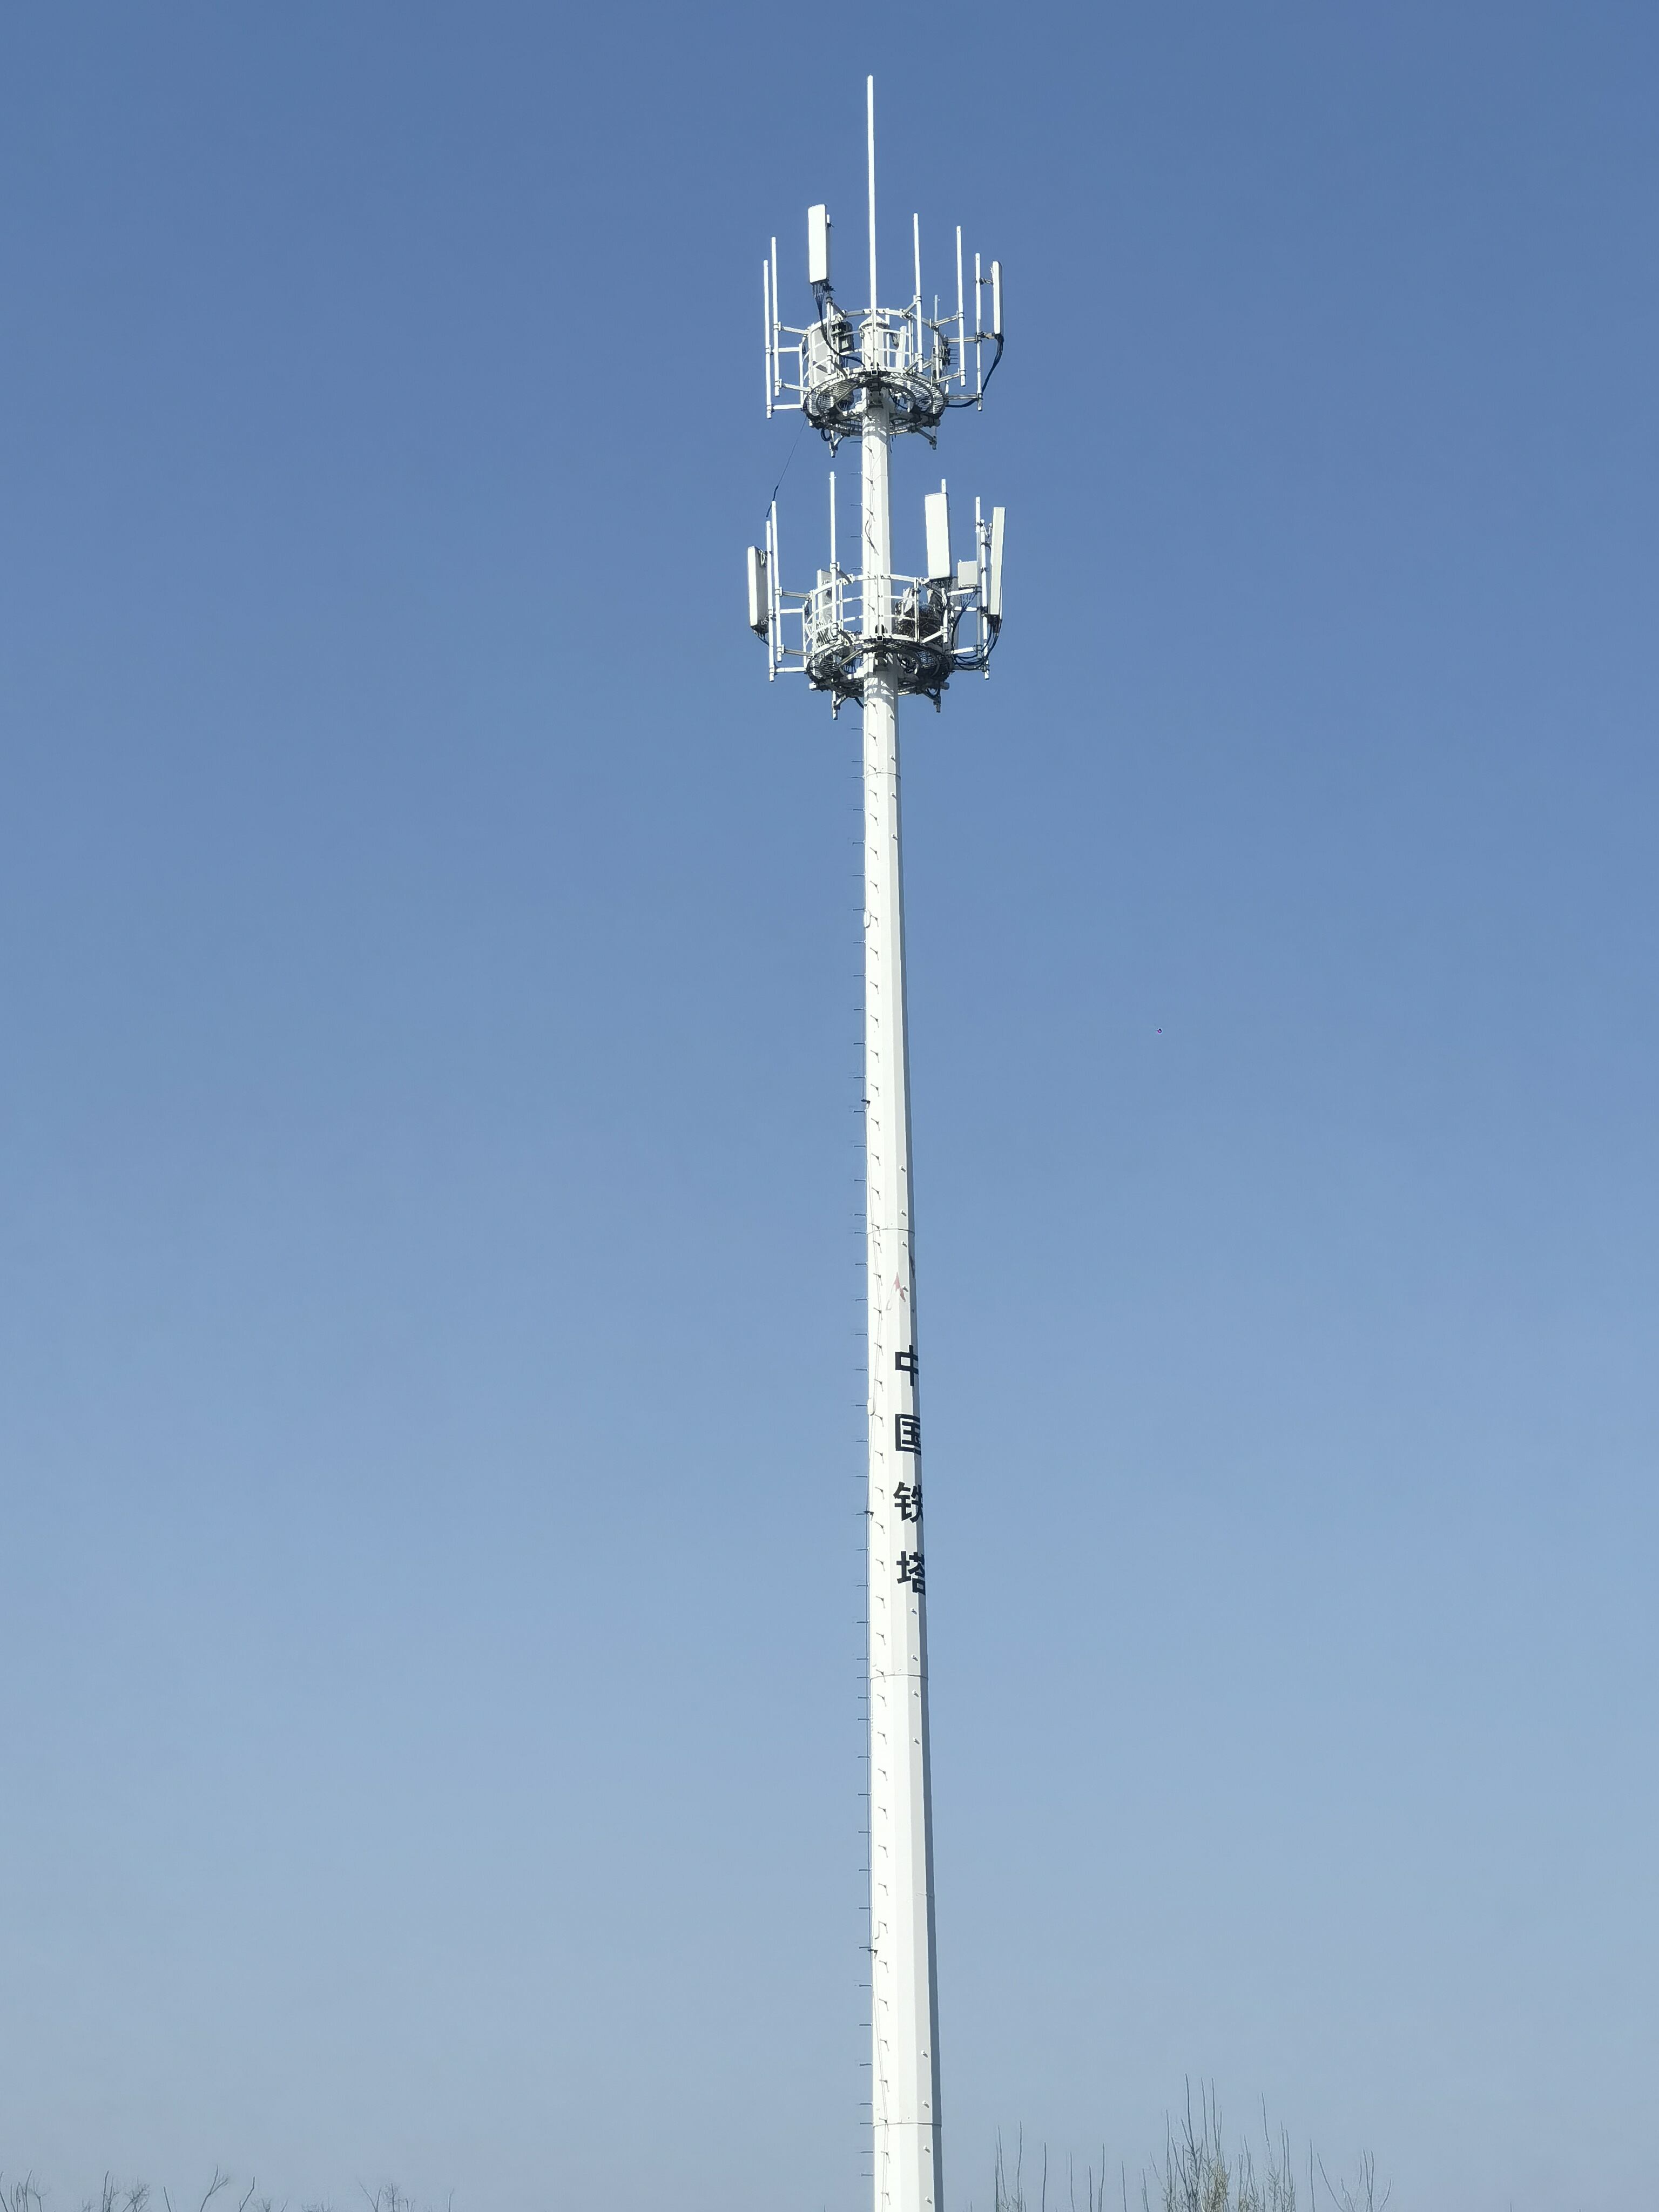 Monopole Tower Antenne Communication Transmission Produksjon